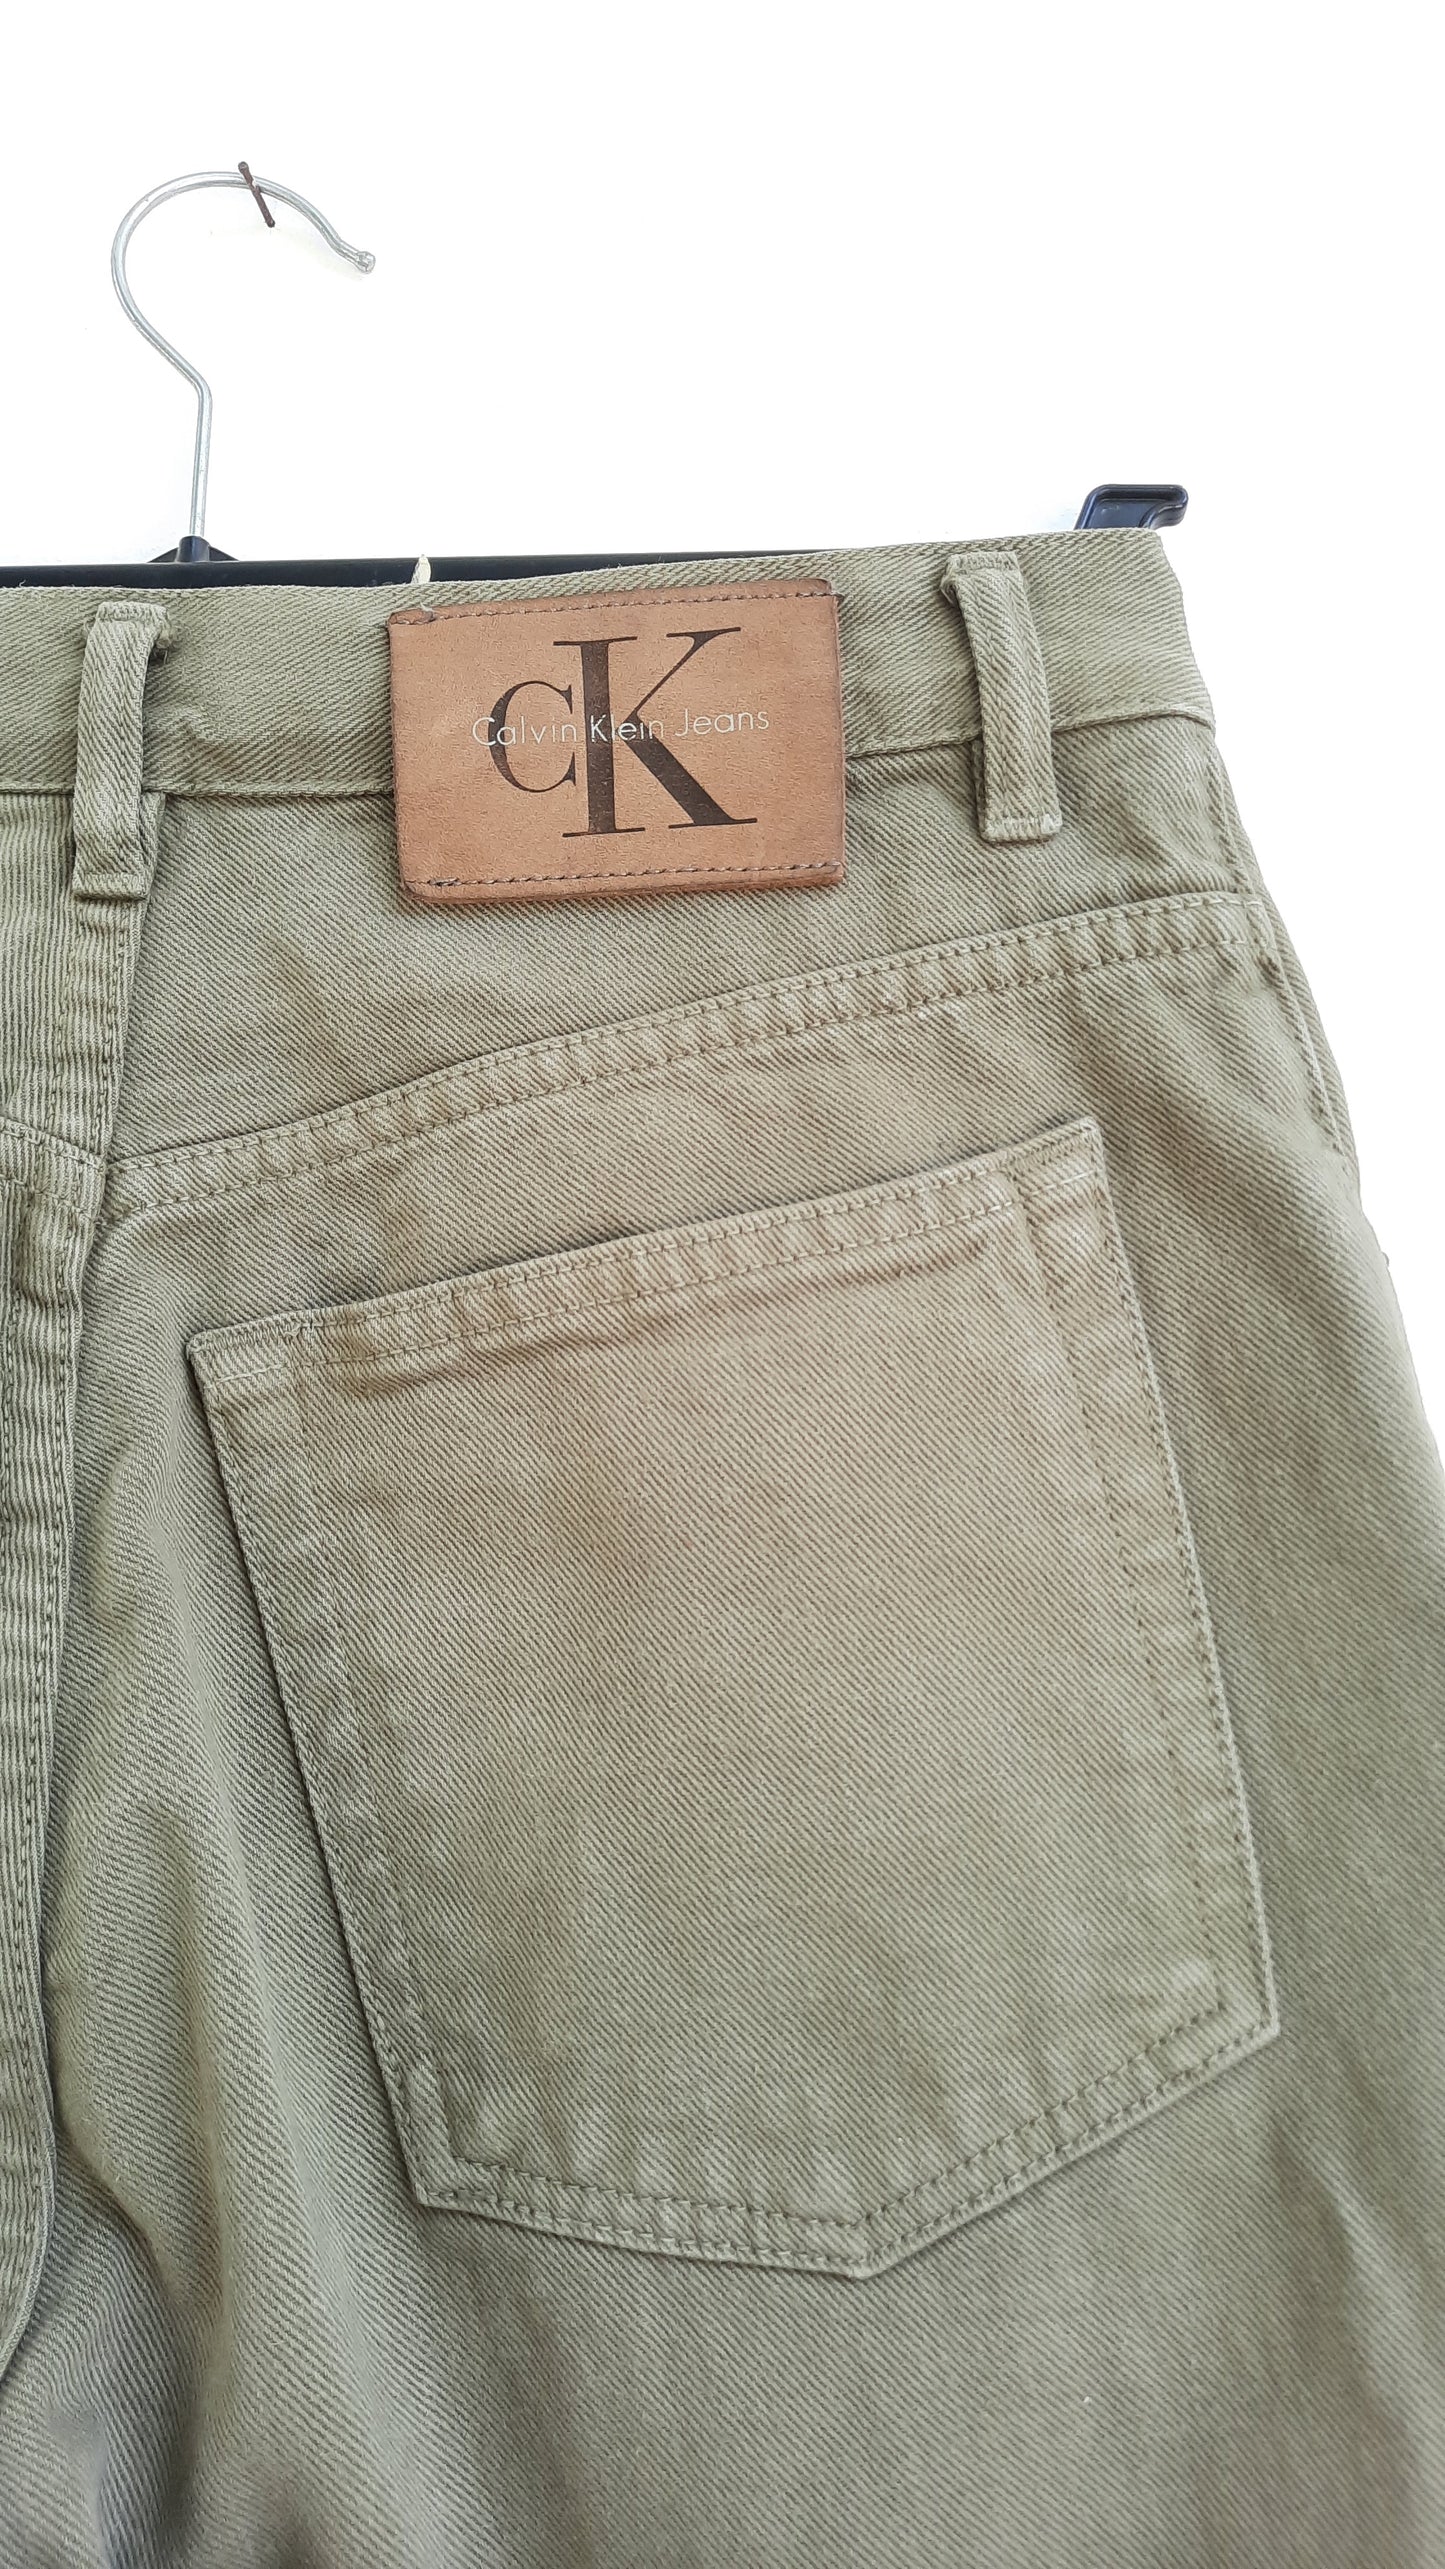 Vintage Calvin Klein Denim Shorts